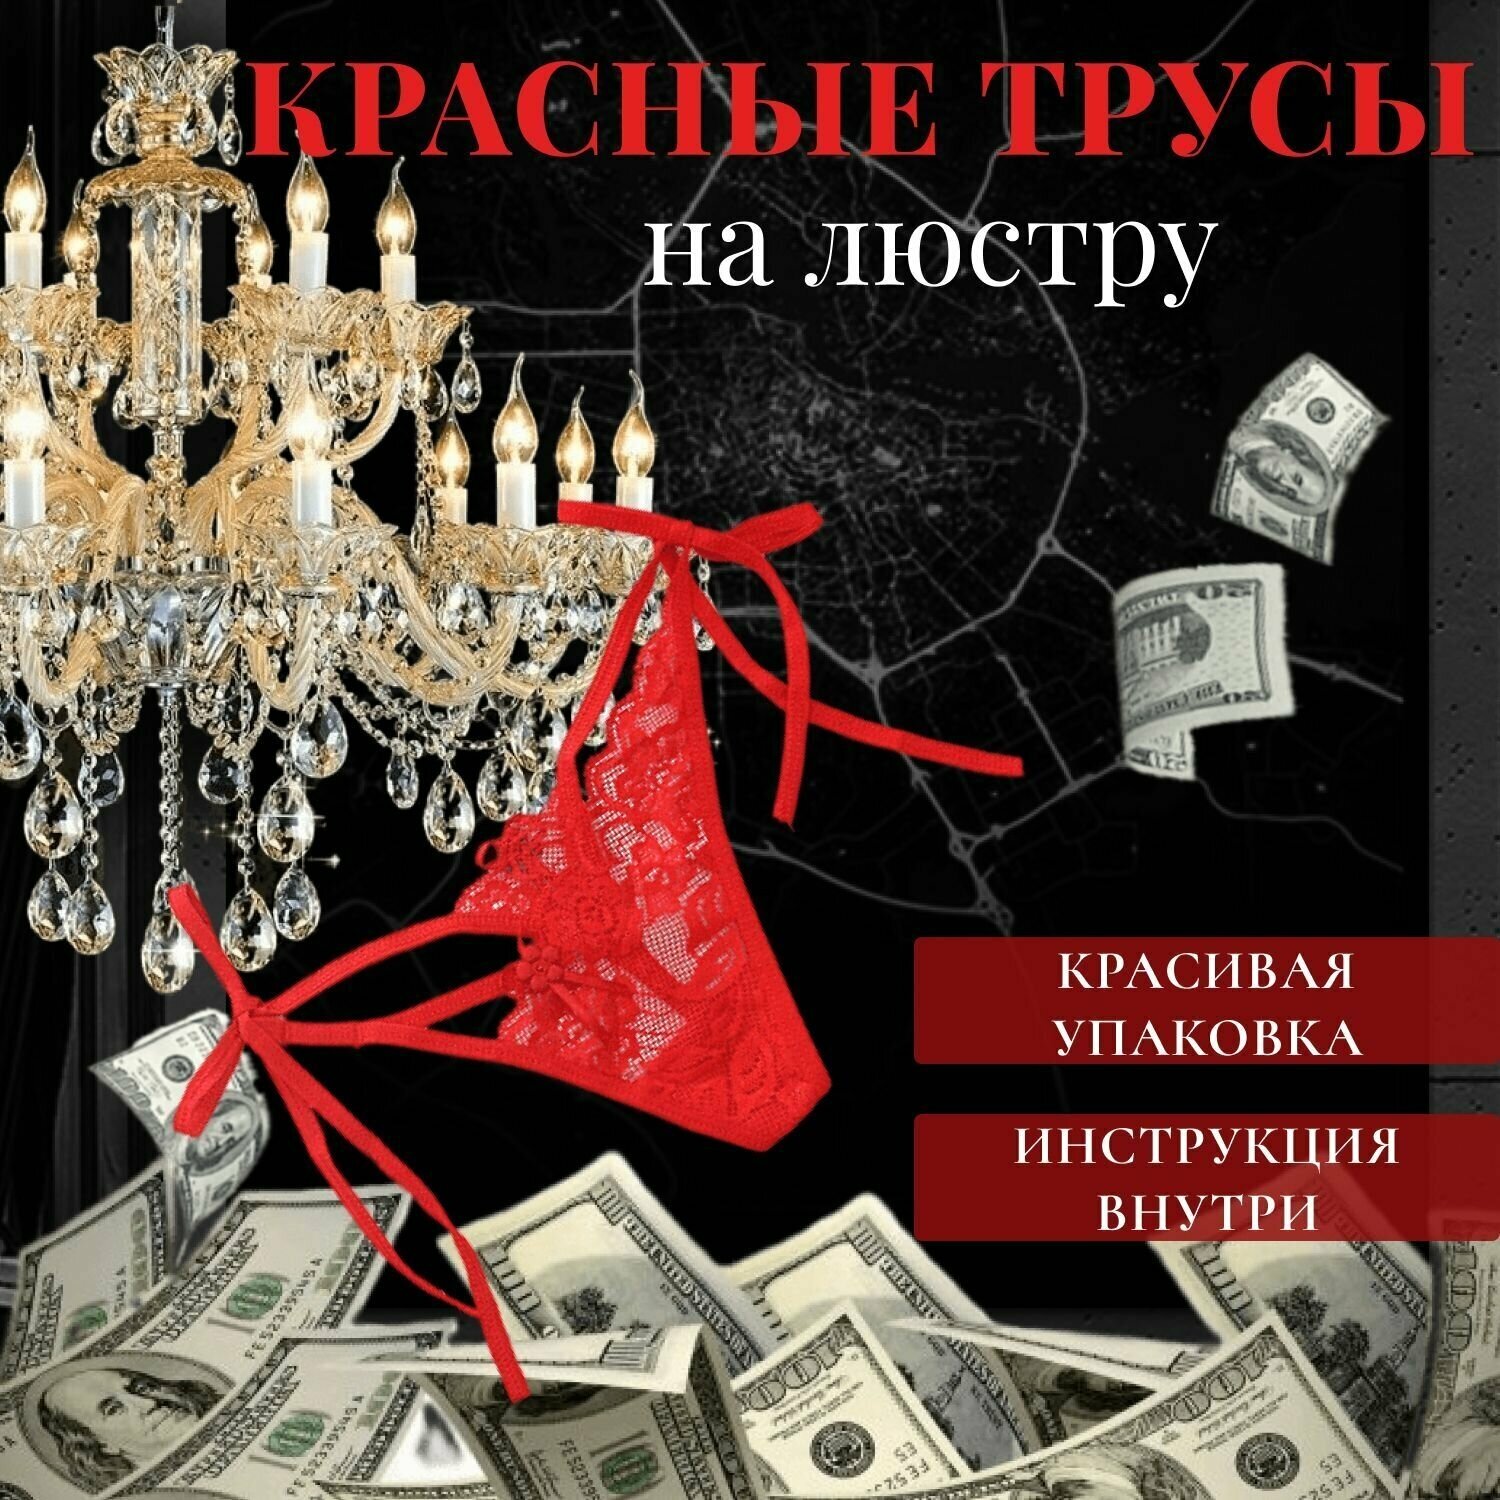 Трусы , размер 42-46, красный — купить в интернет-магазине по низкой цене  на Яндекс Маркете